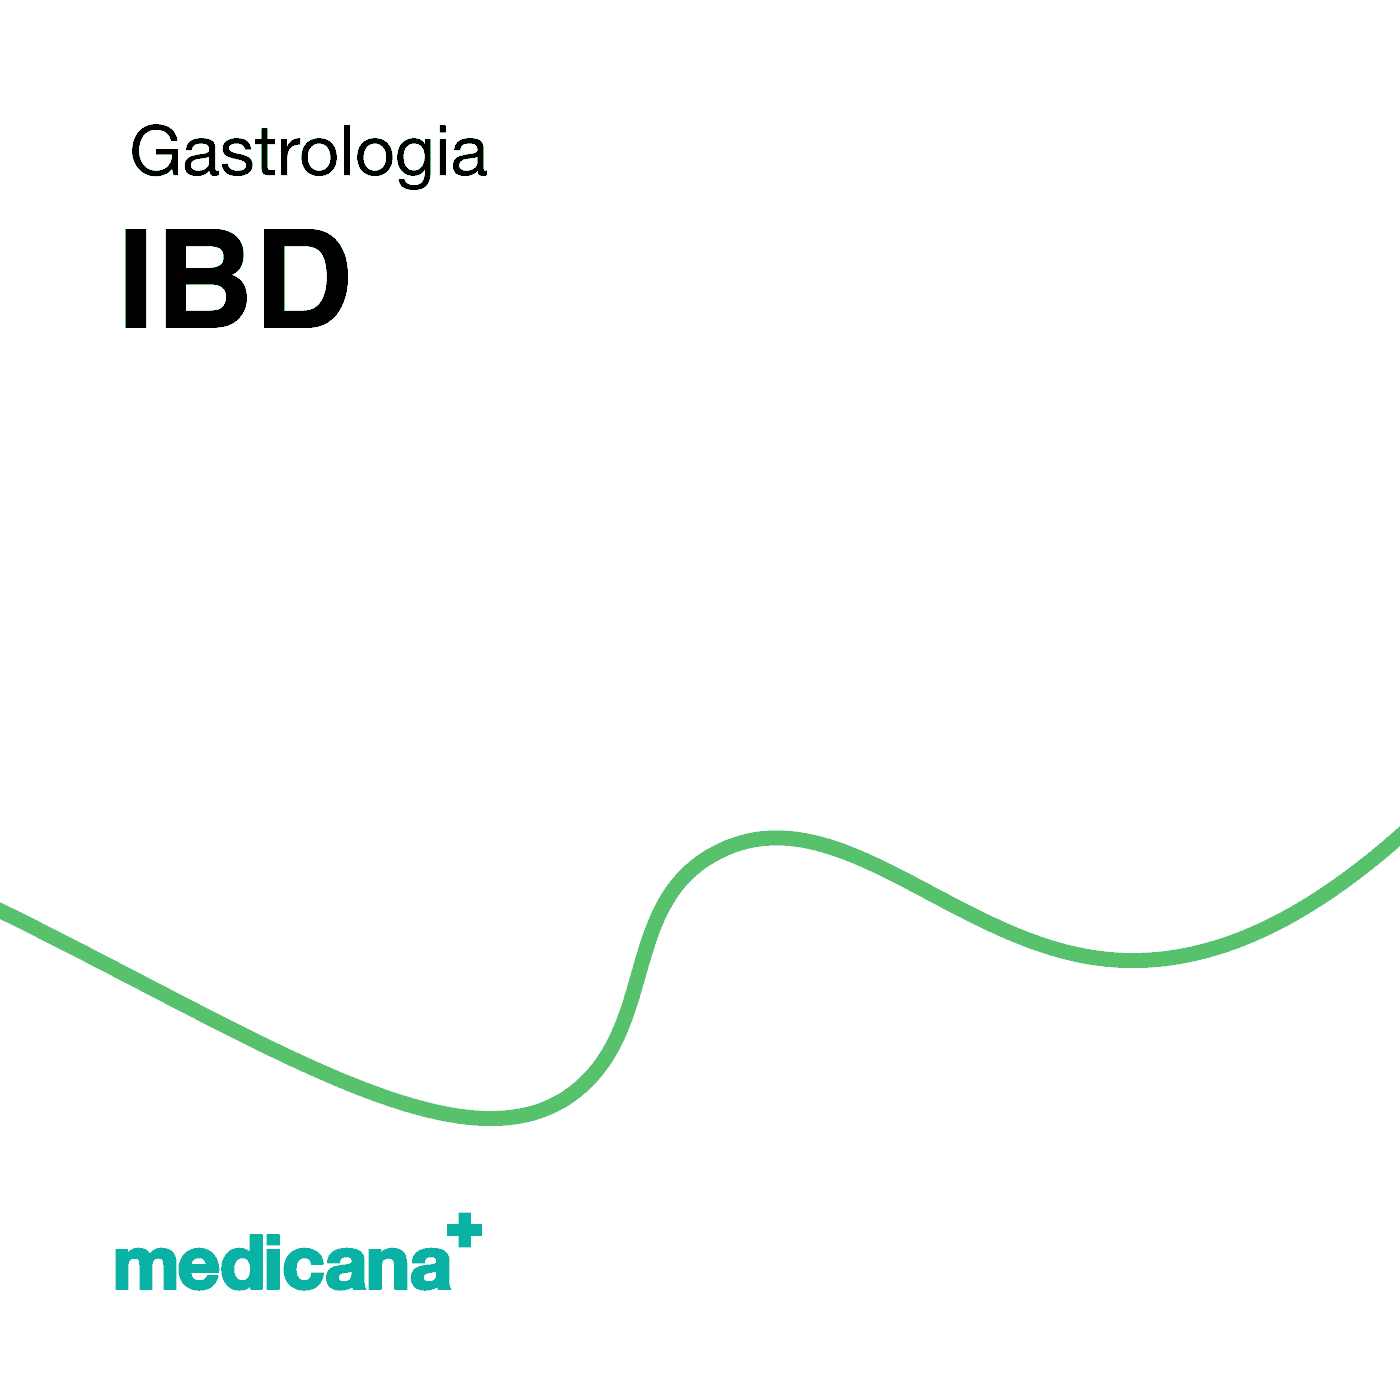 Grafika, białe tło z zieloną kreską, czarnym napisem Gastrologia - IBD i logo Medicana Centrum Terapii Medyczna Marihuana w lewym dolnym rogu.